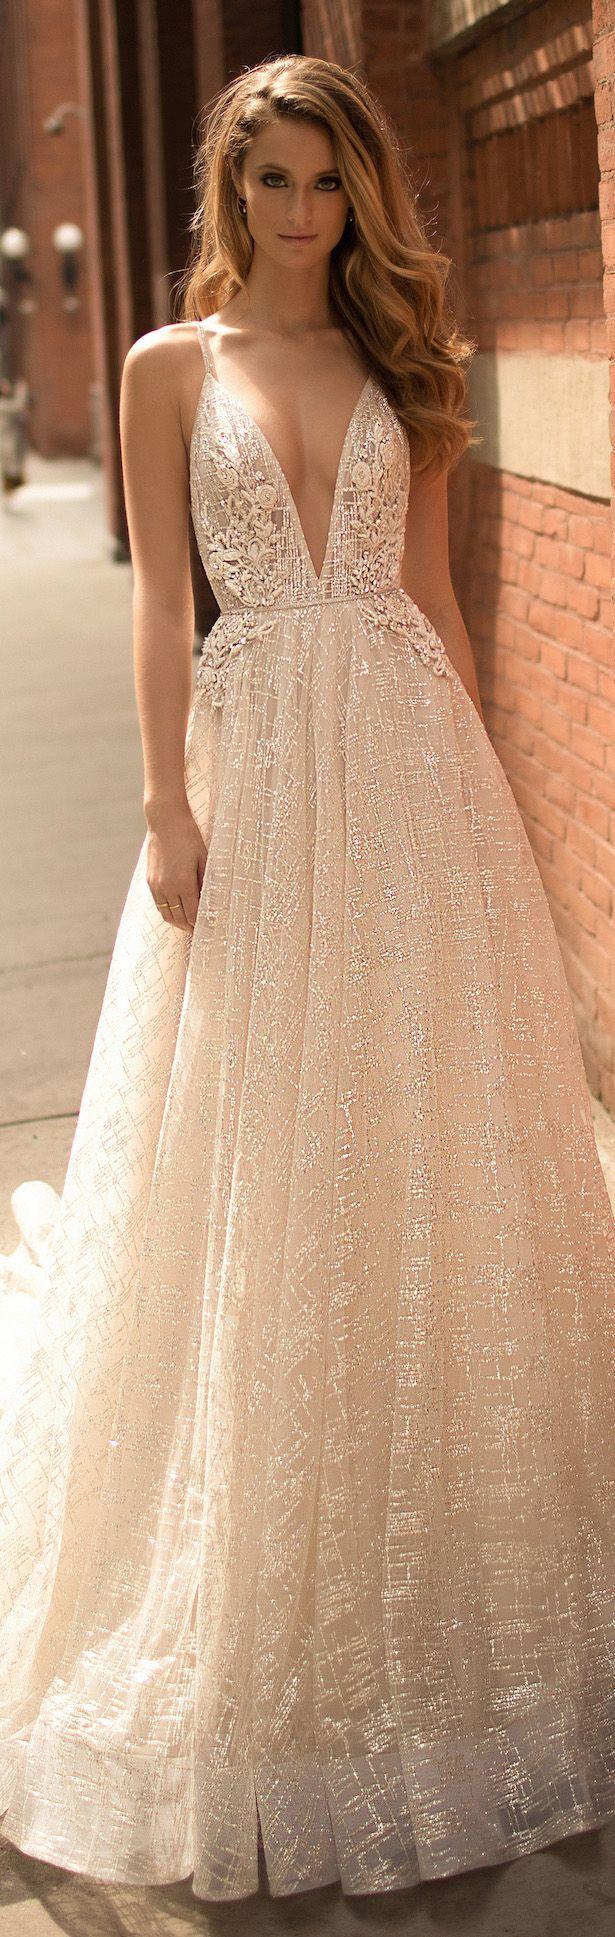 زفاف - Berta Wedding Dress Collection Spring 2018